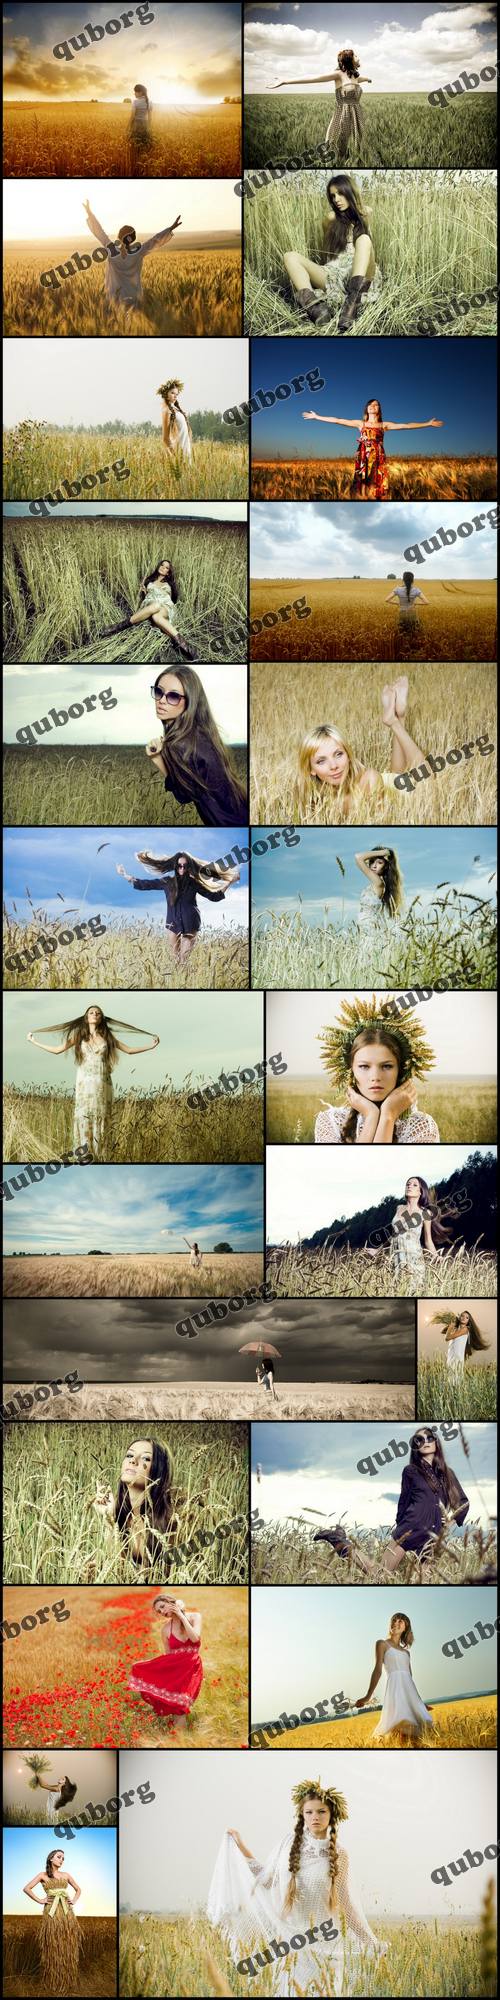 Stock Photos - Girl on Wheat Field